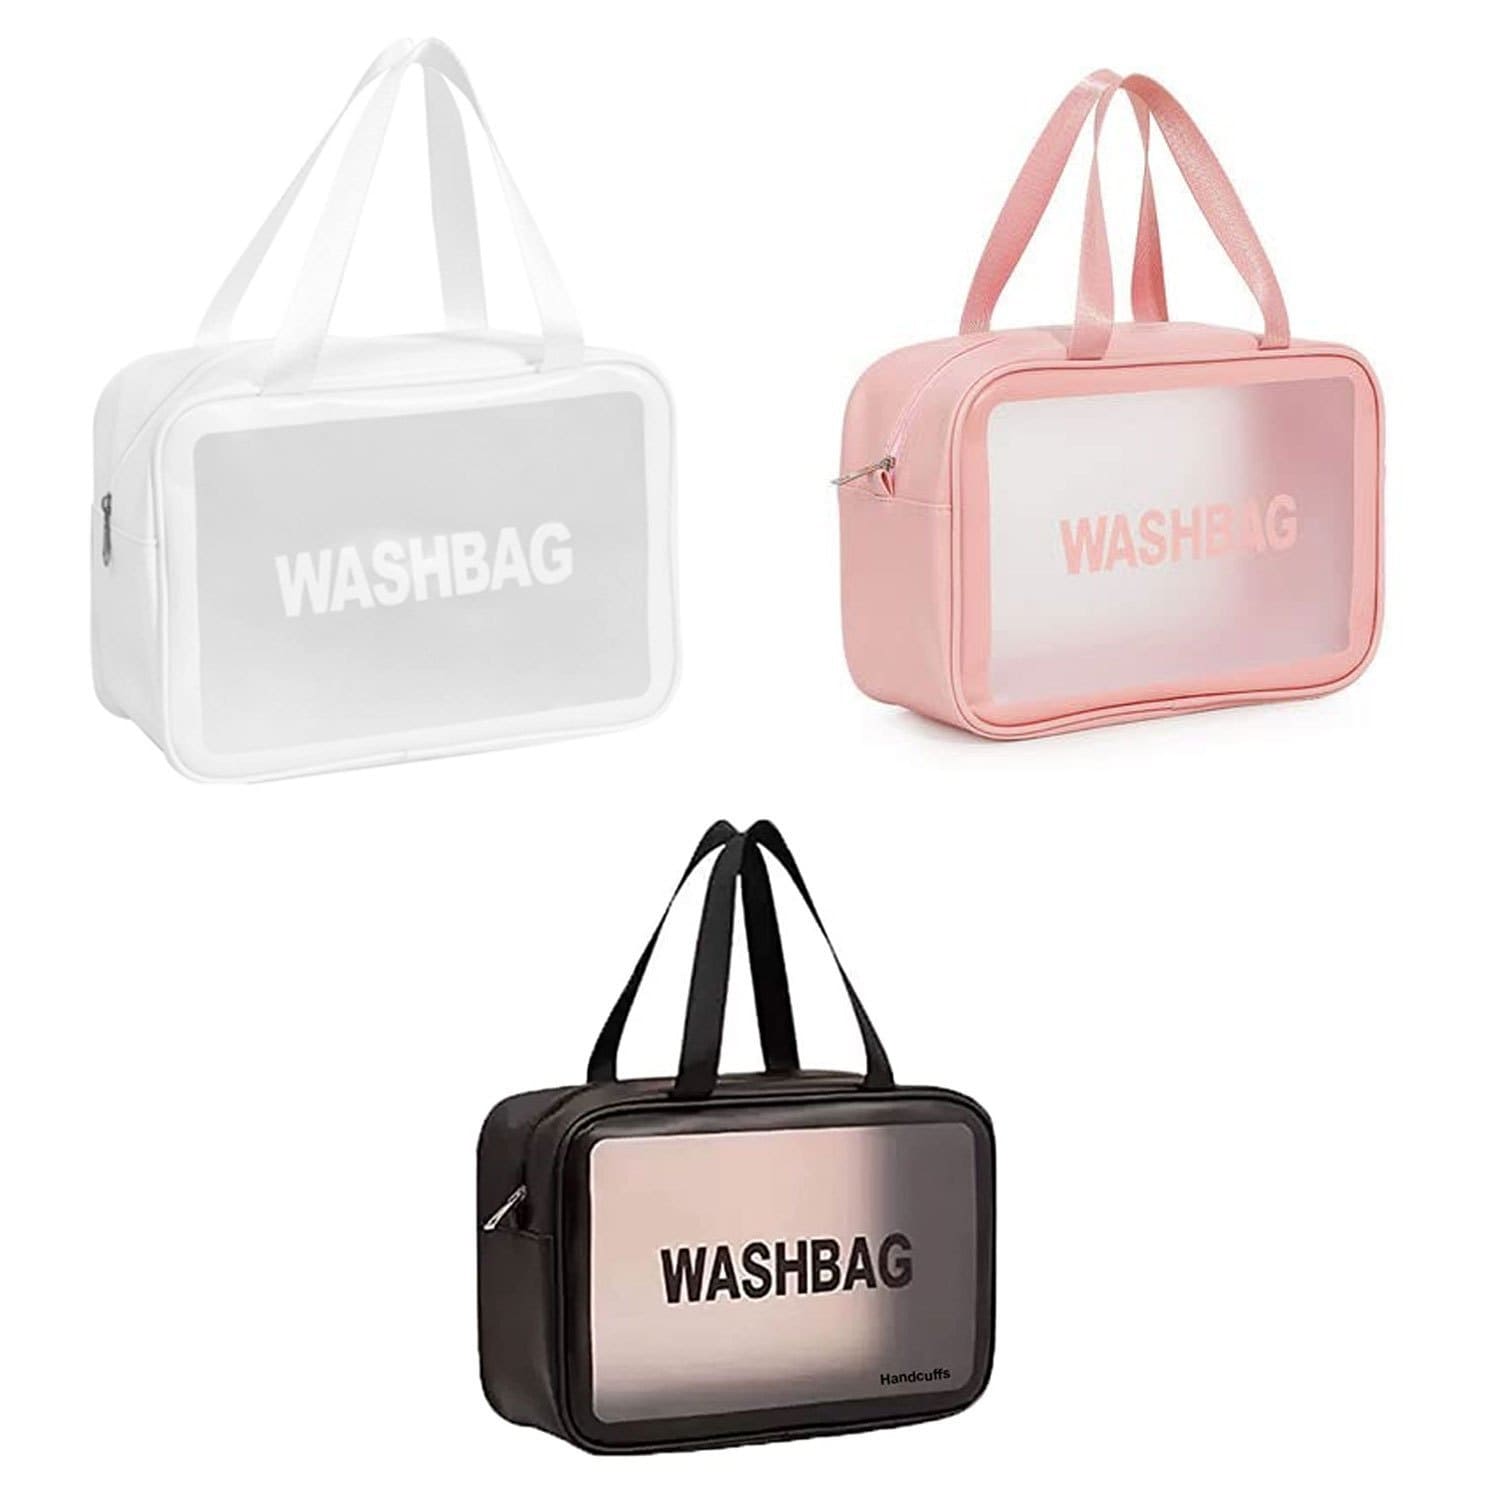 کیف لوازم آرایش زنانه مدل WASHBAG بزرگ سایز شماره ۳ رنگ سفید